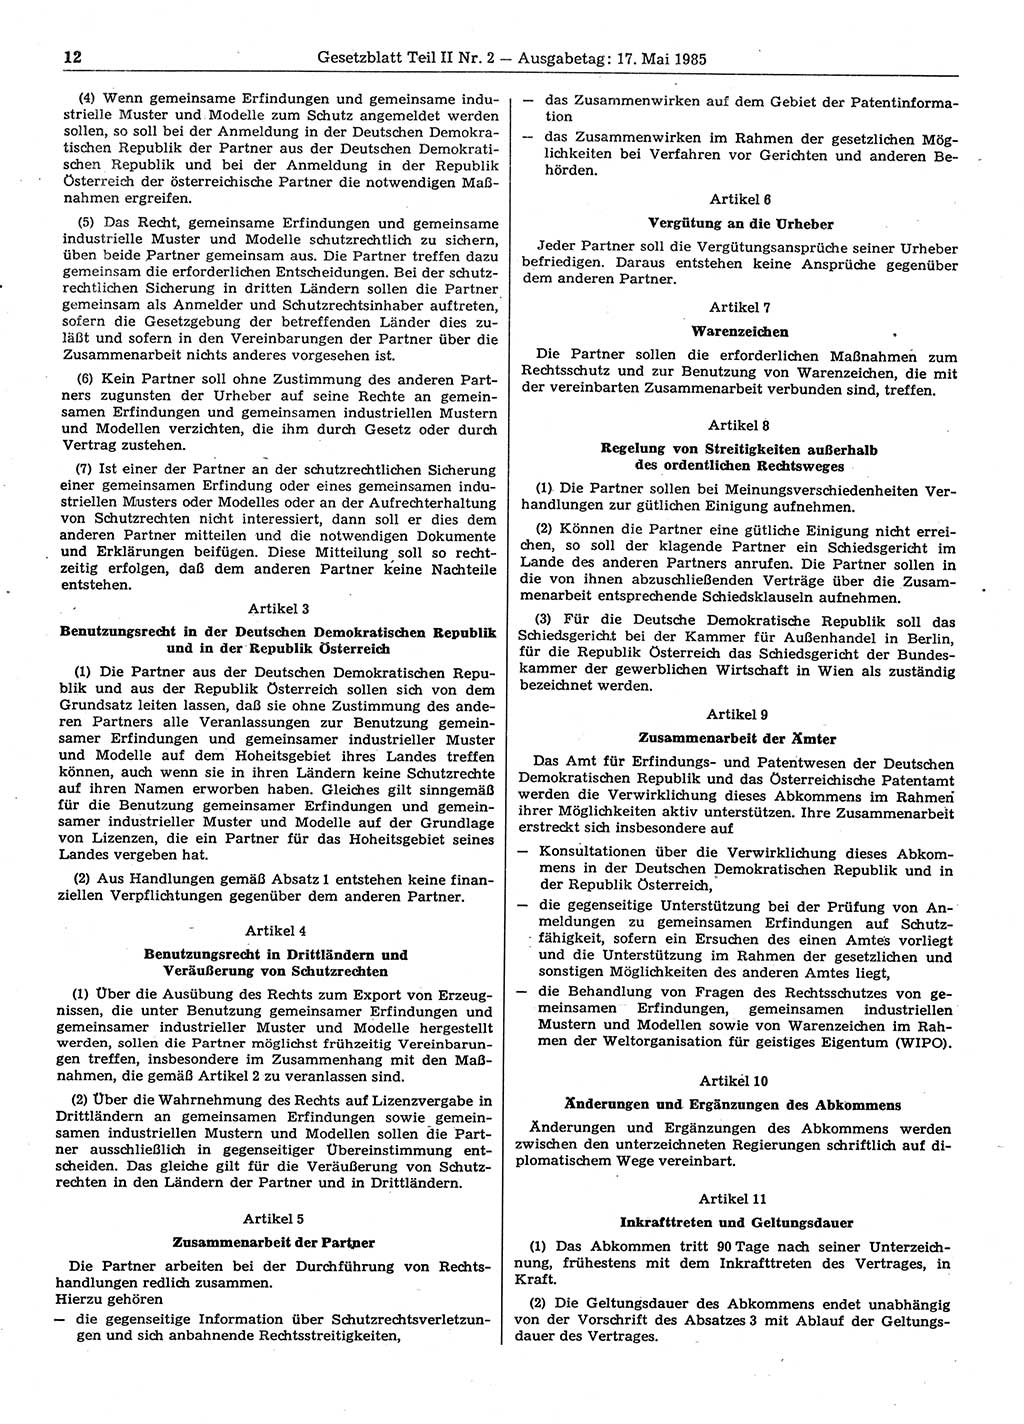 Gesetzblatt (GBl.) der Deutschen Demokratischen Republik (DDR) Teil ⅠⅠ 1985, Seite 12 (GBl. DDR ⅠⅠ 1985, S. 12)